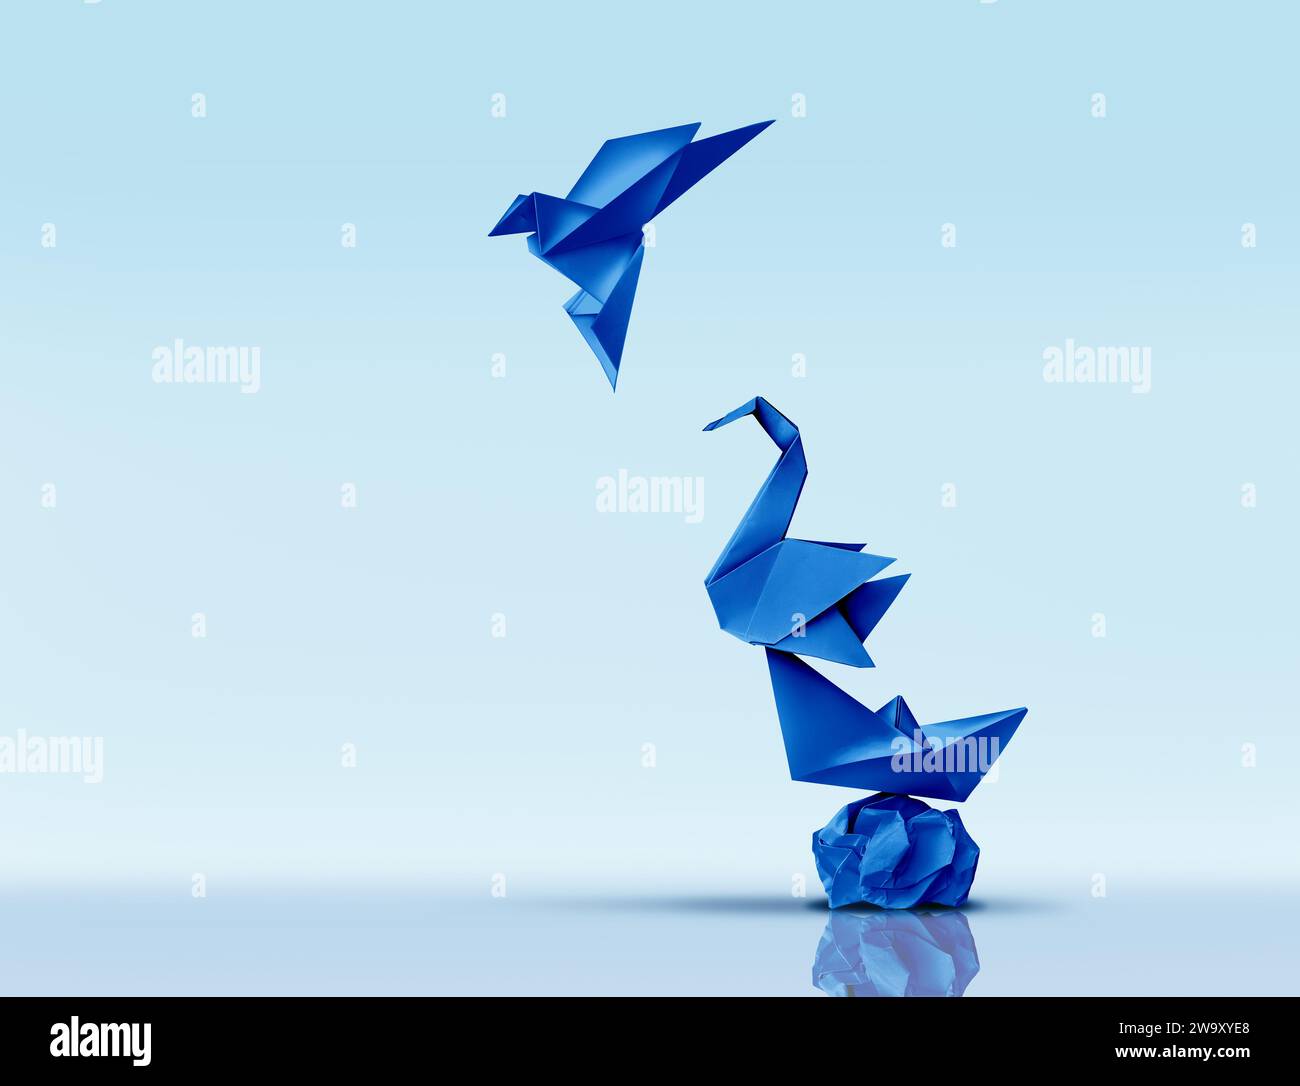 Das Streben nach Größe und Exzellenz oder das Klettern eines höheren Konzepts und das Aufsteigen auf neue Höhen Metapher als blaue Origami-Papierskulpturen wie Sy Stockfoto